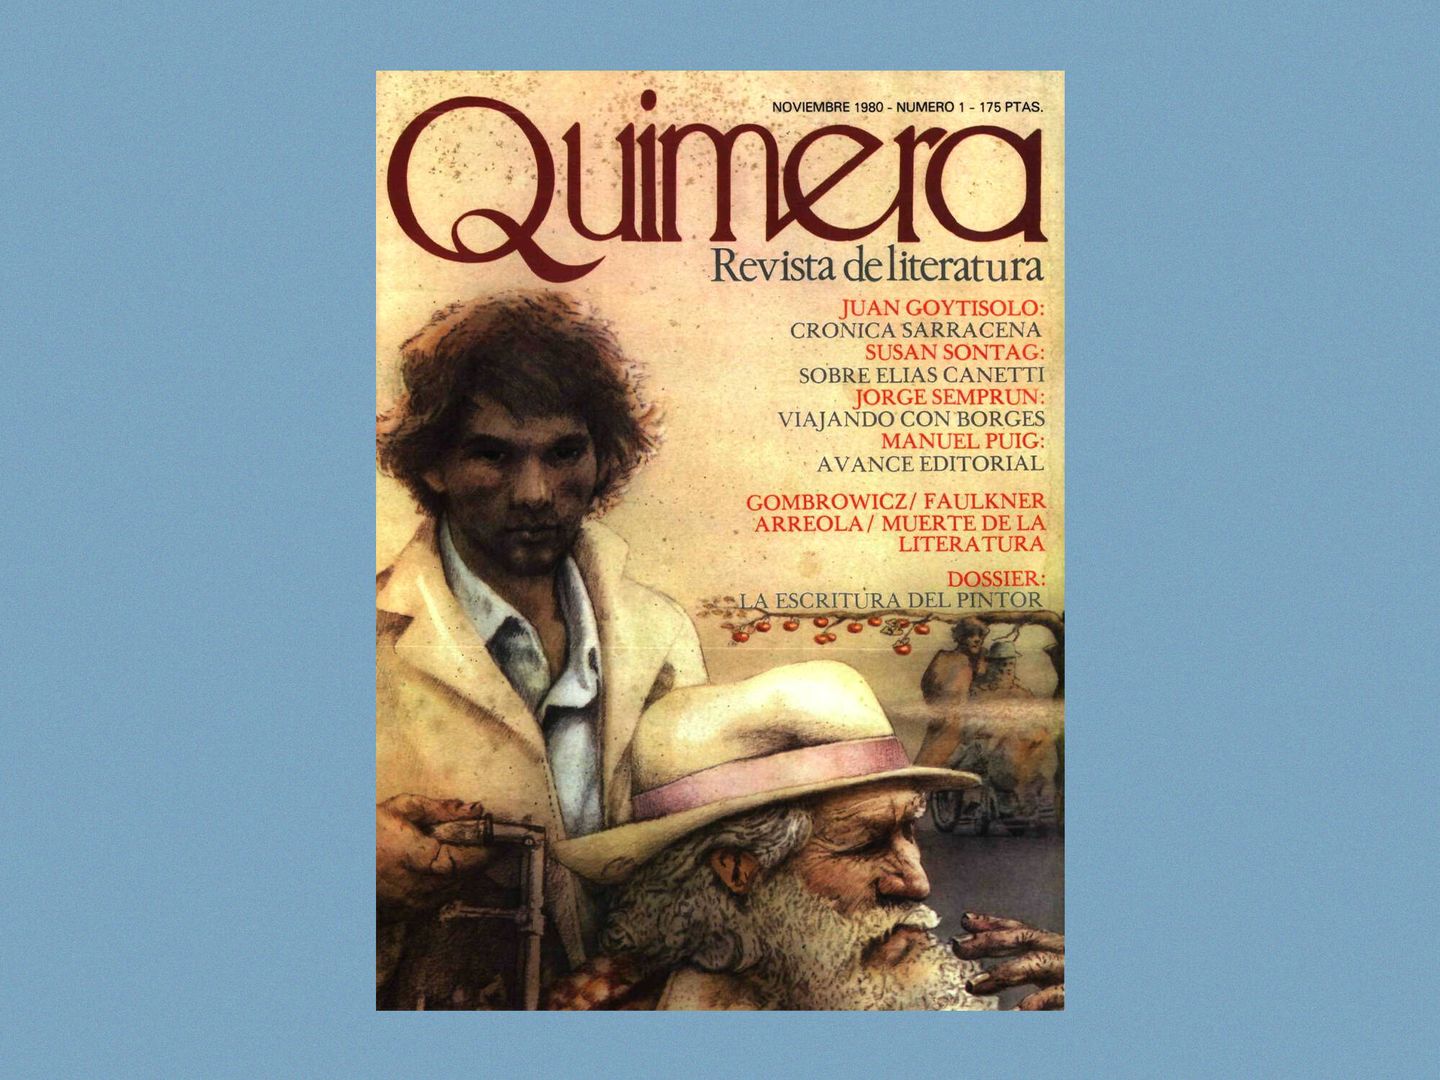 El primer número de la revista Quimera. (Cedida por la revista)